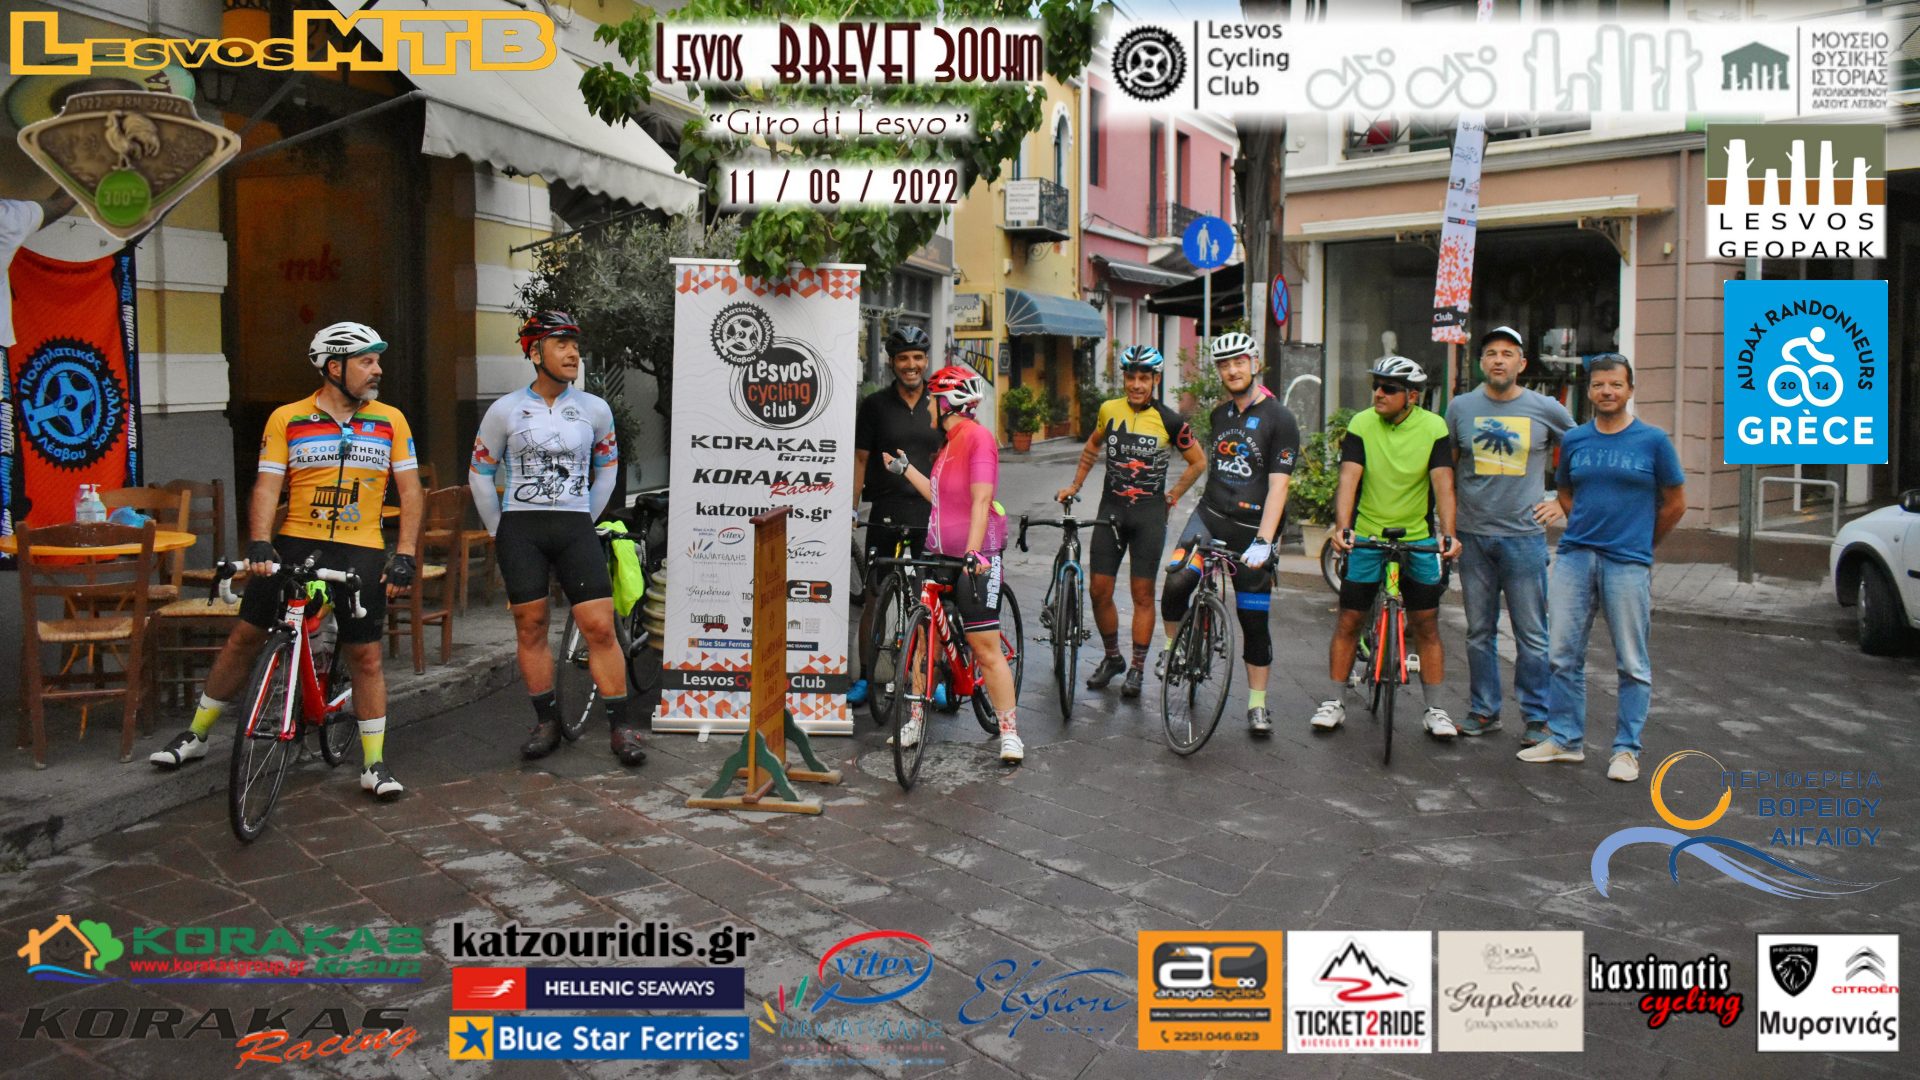 Lesvos Brevet 300Κm «Giro di Lesvo»: 20 ώρες-308 χιλιόμετρα